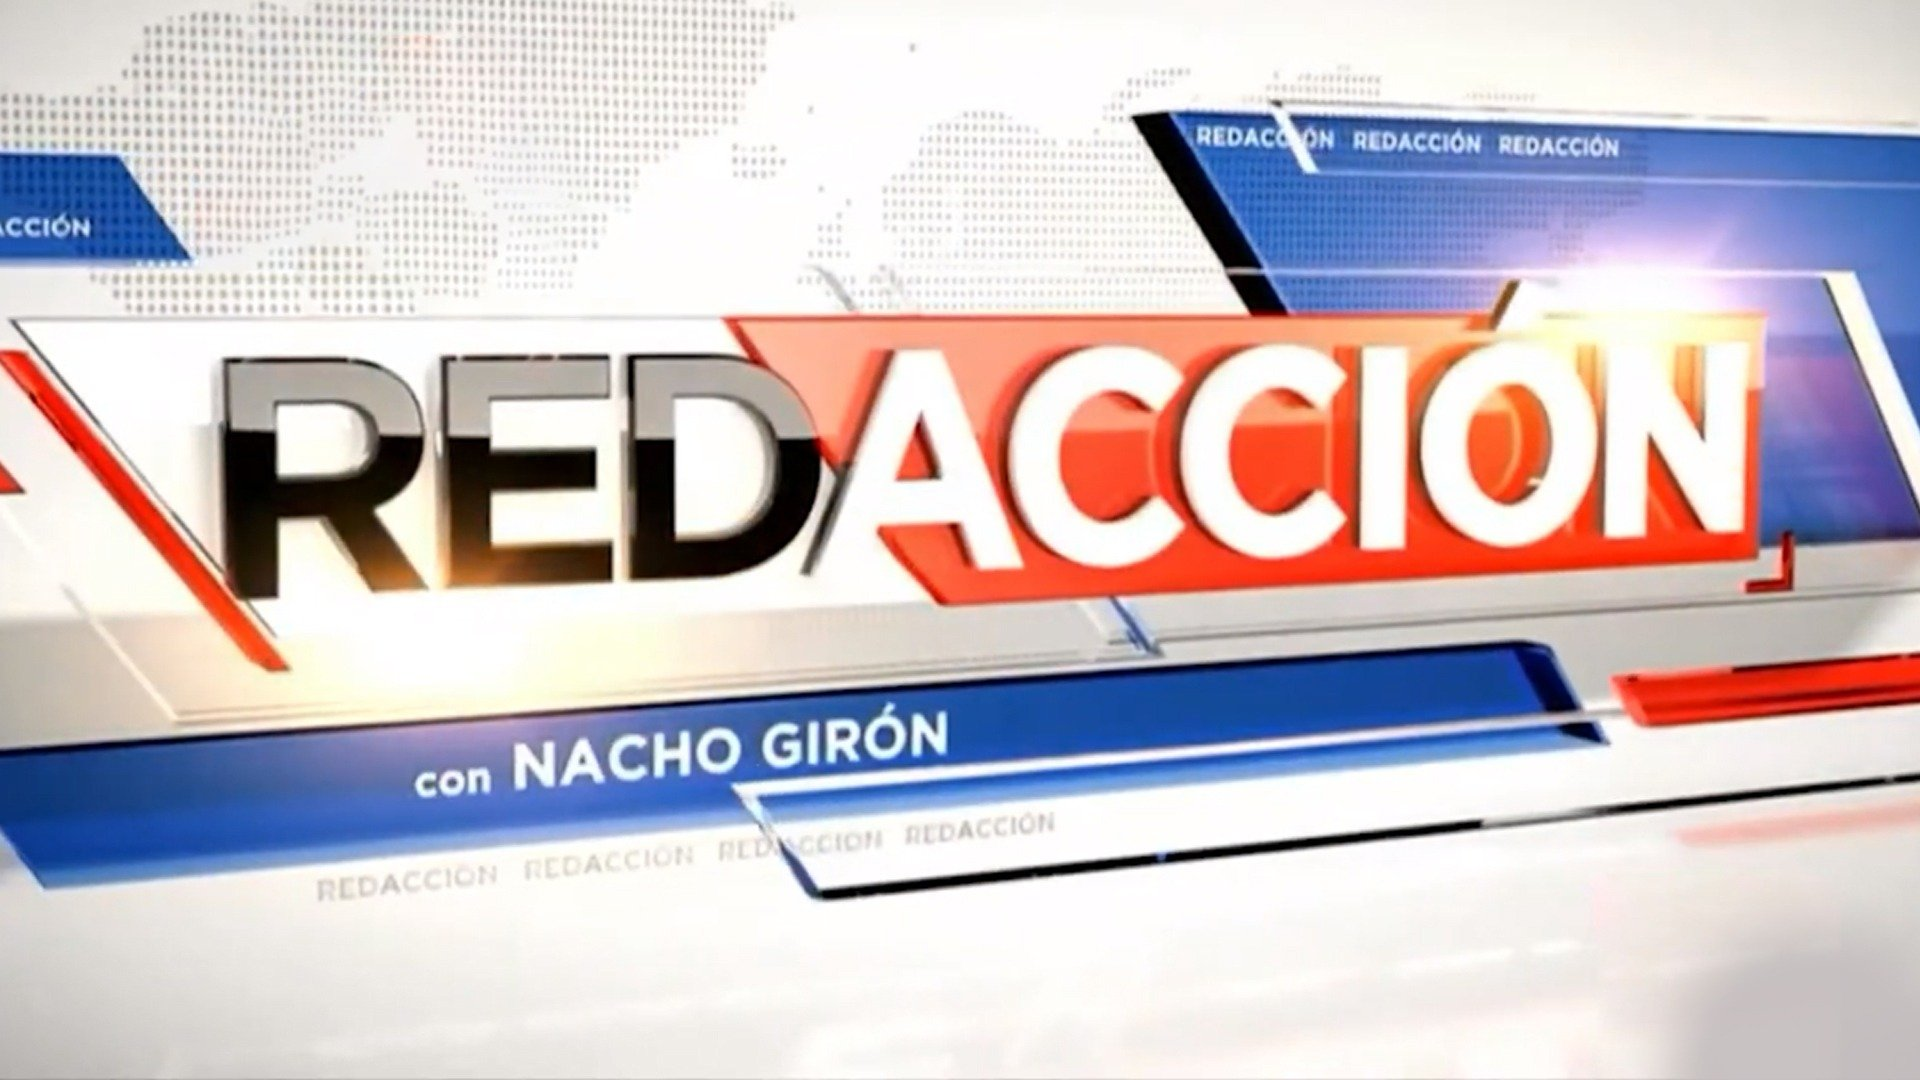 Redacción con Nacho Girón